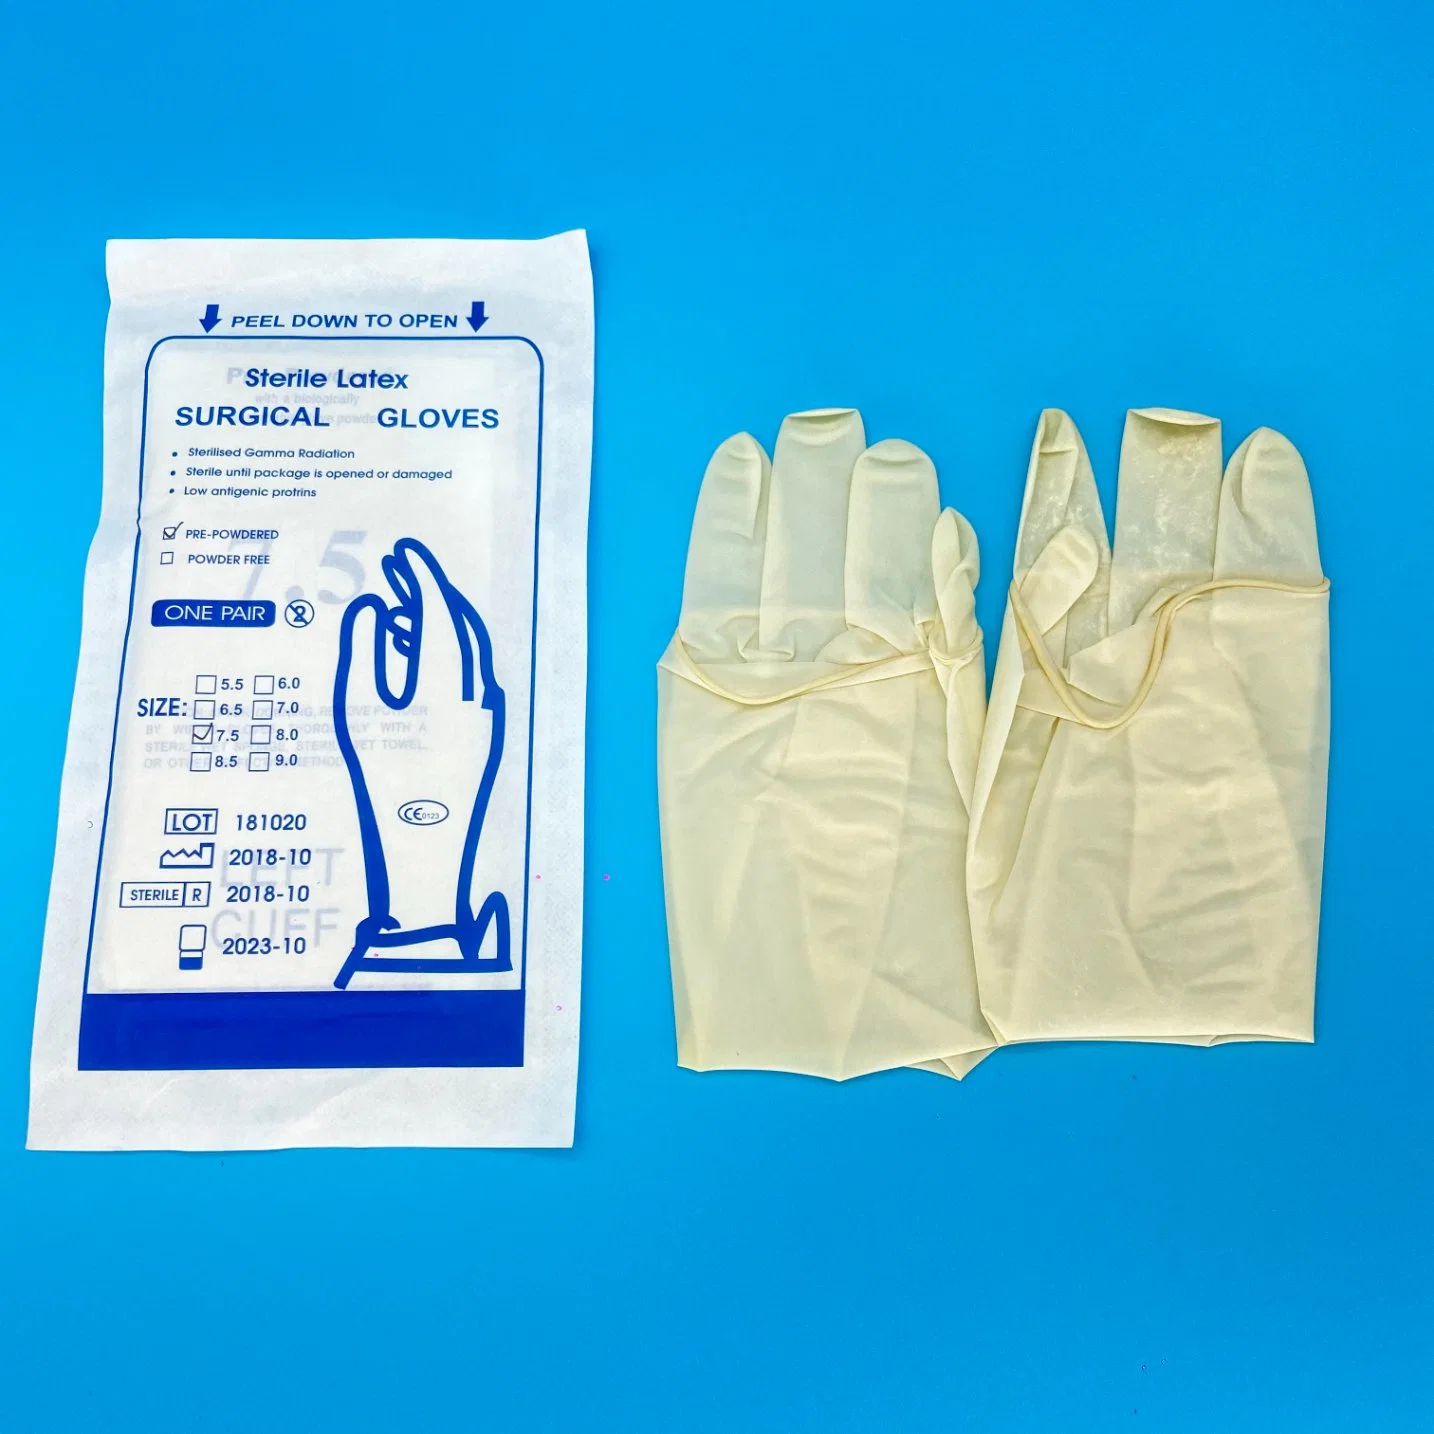 Hot vendre l'utilisation et de la poudre en poudre libre Glovees chirurgicaux en latex stériles